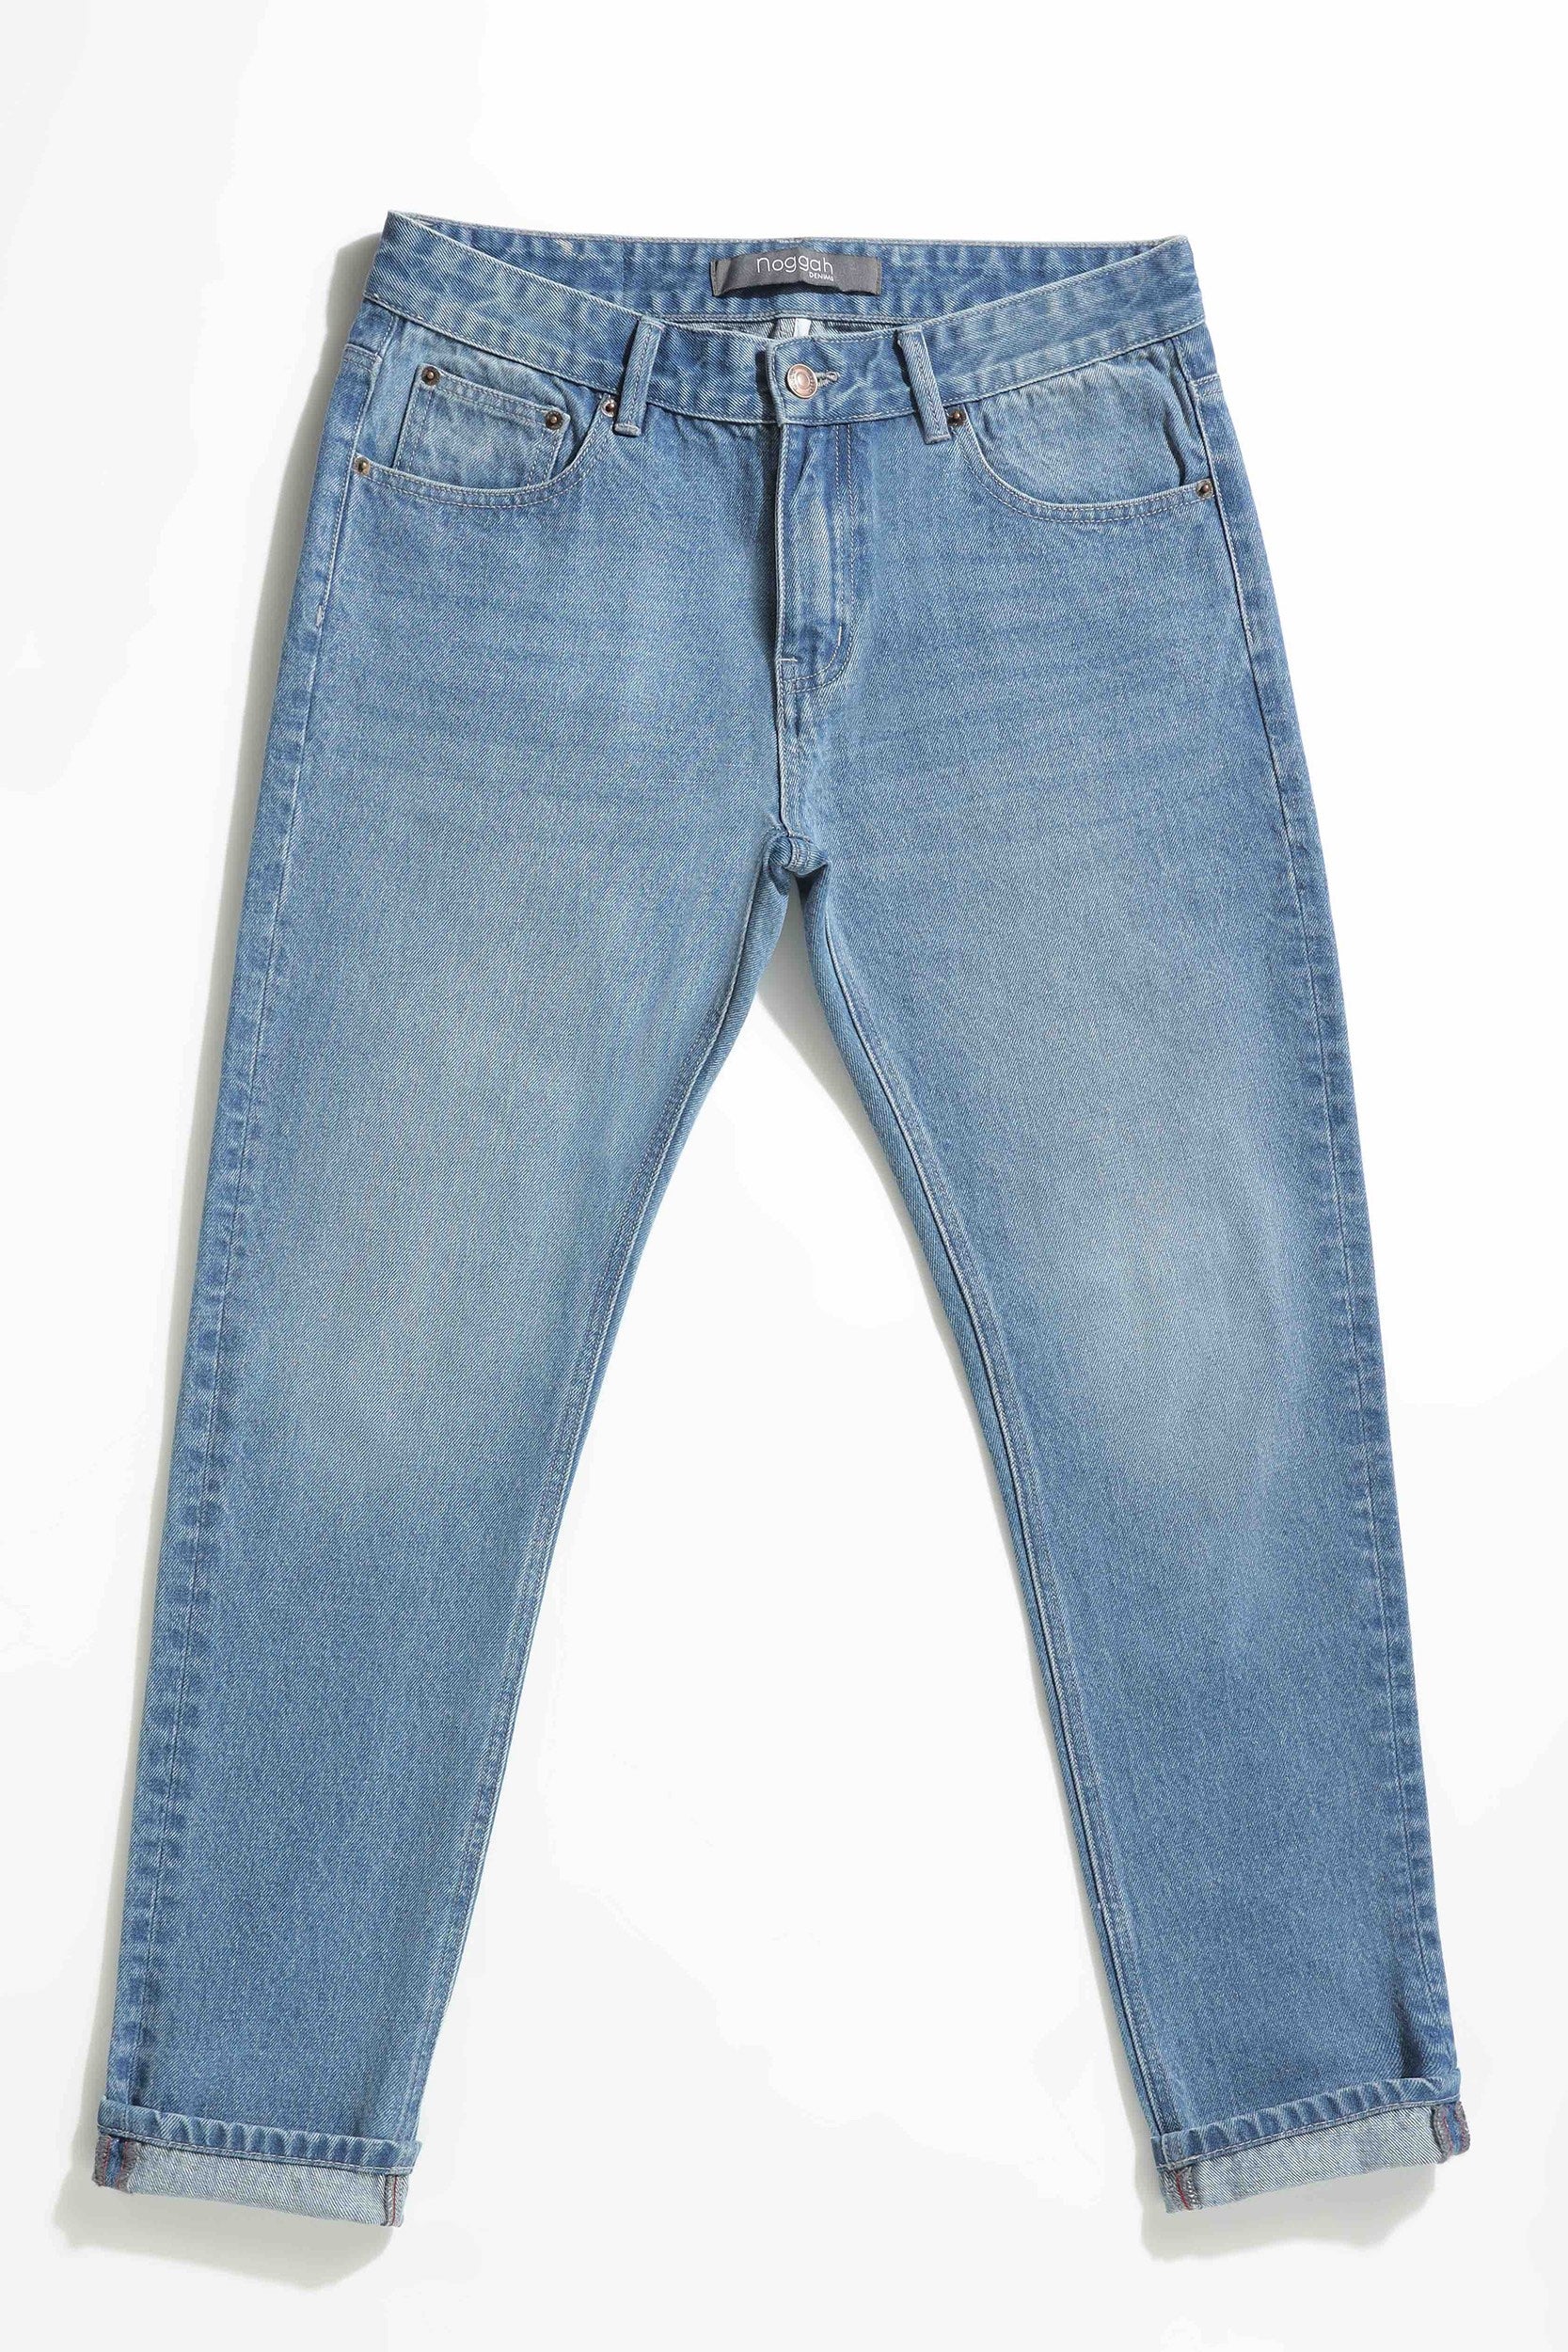 ASOS DESIGN baggy jeans in light wash blue | ASOS